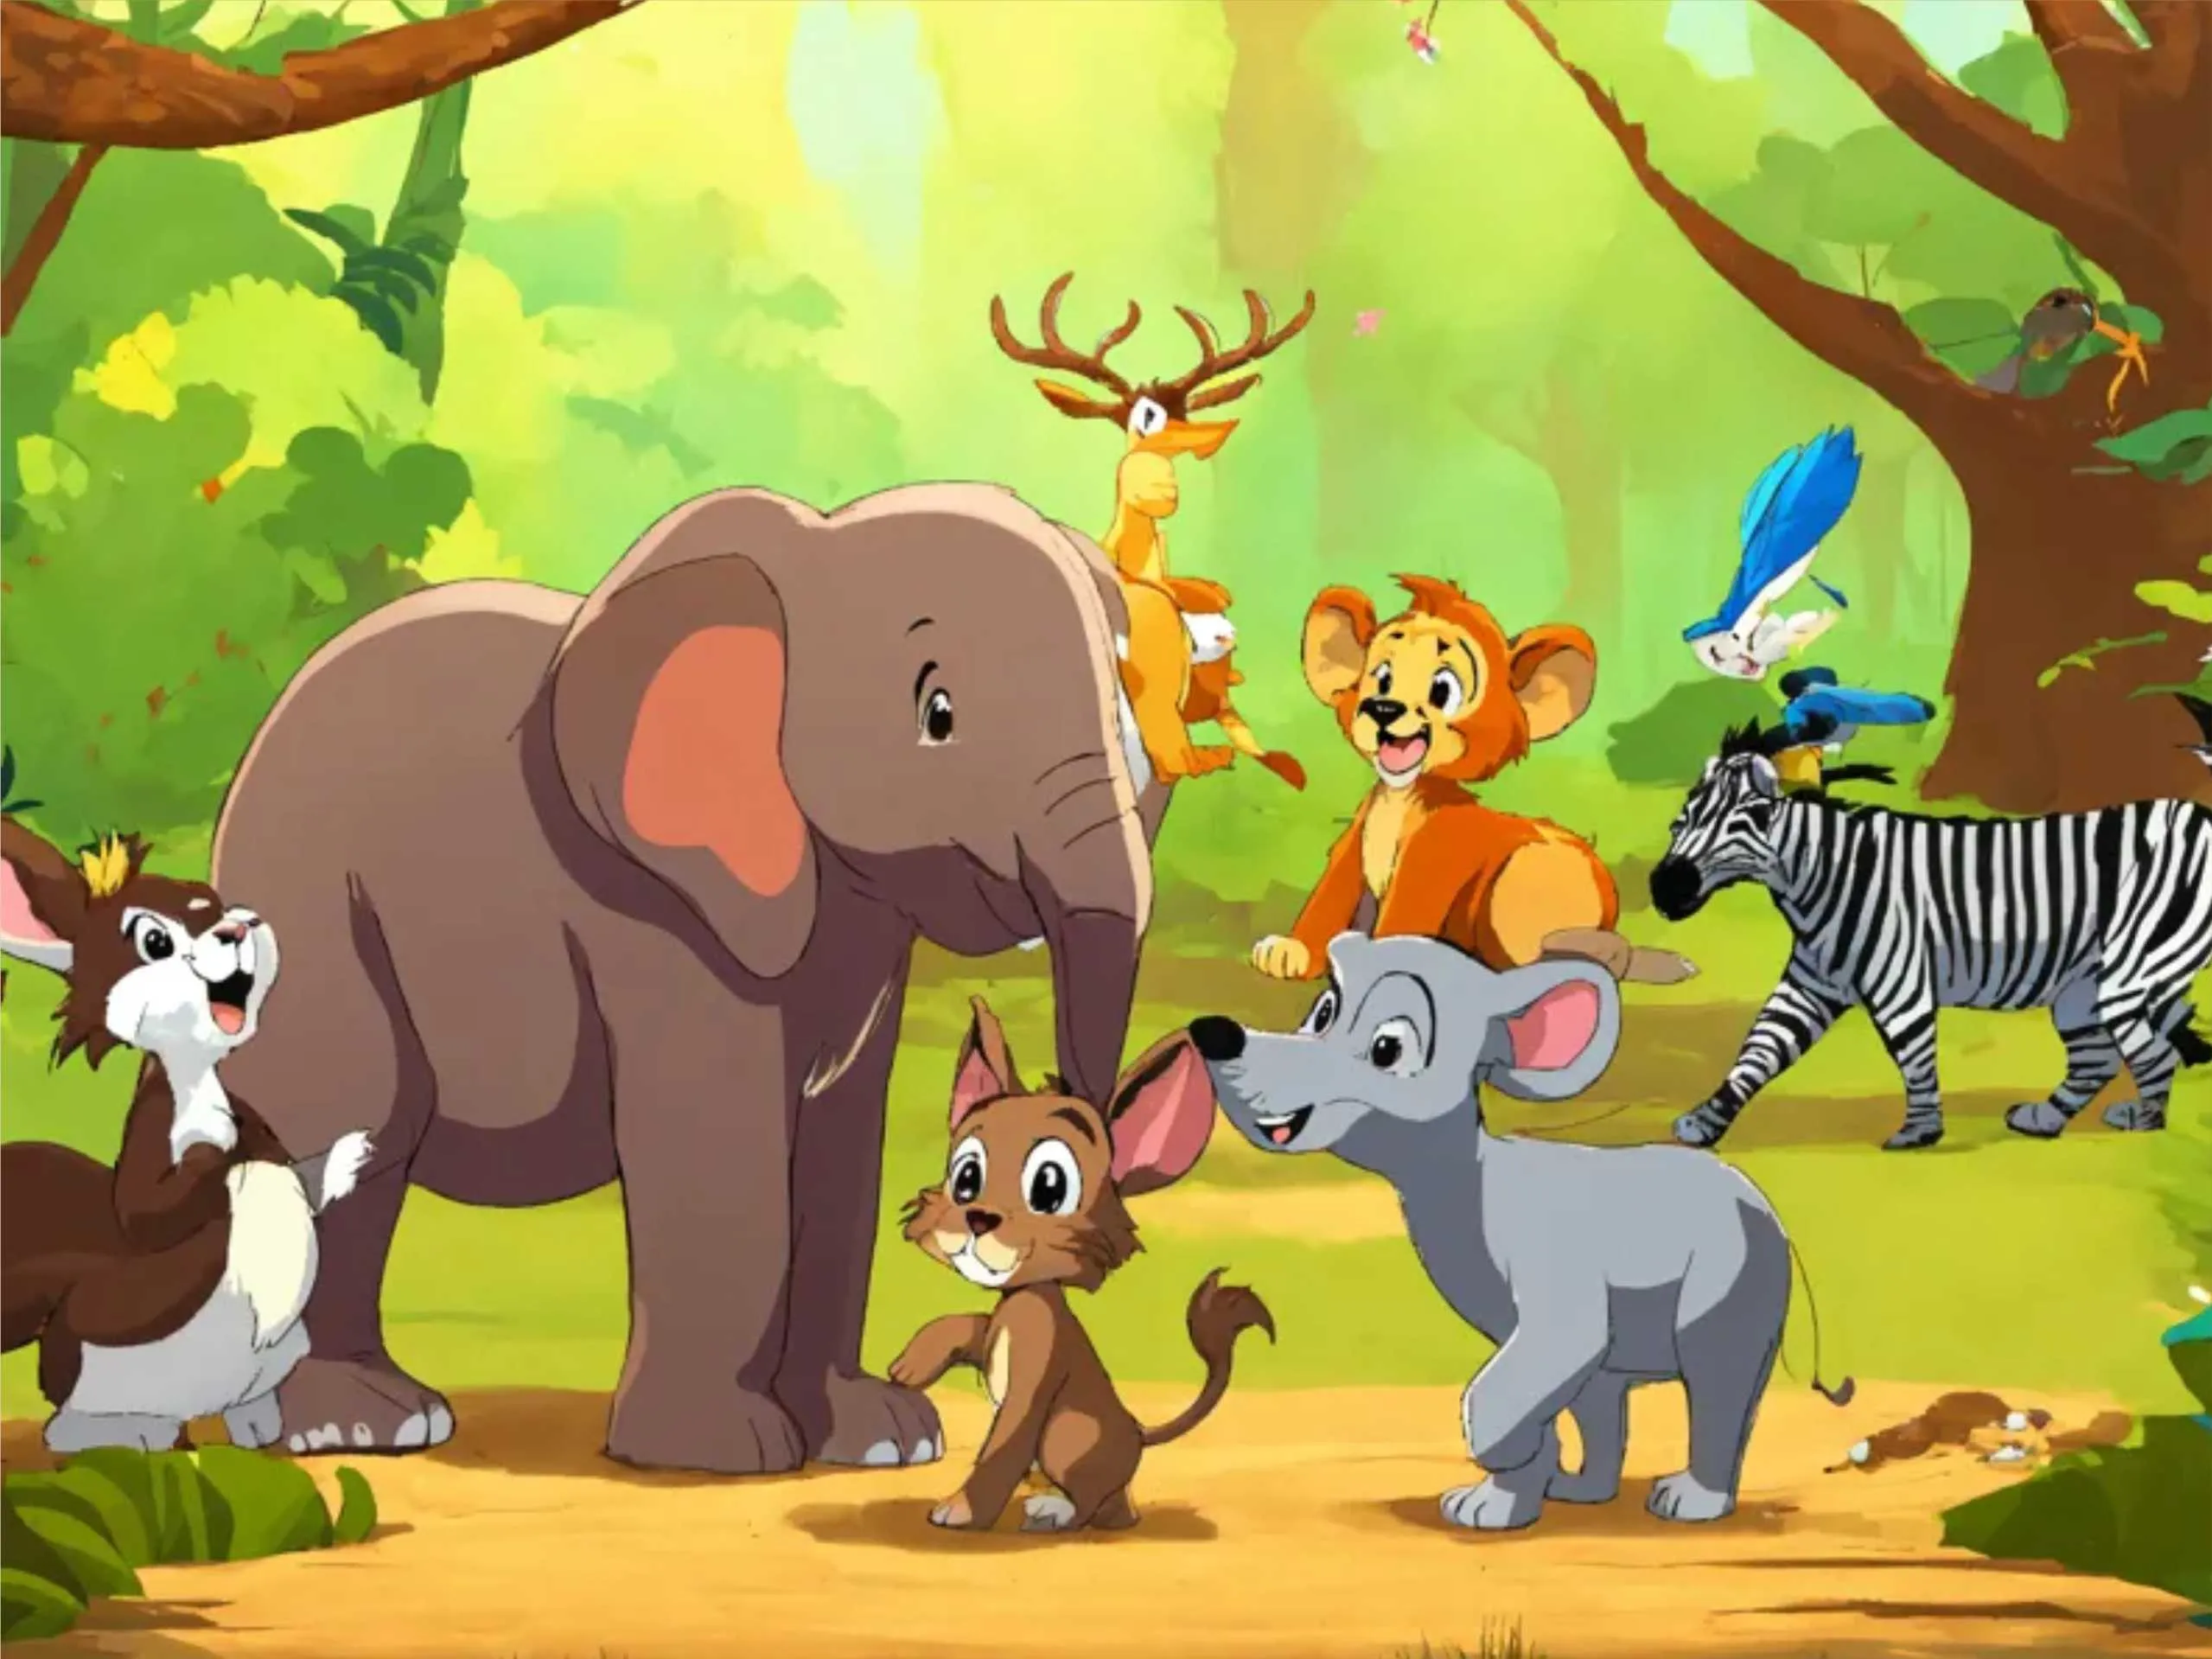 Jungle animals cartoon image